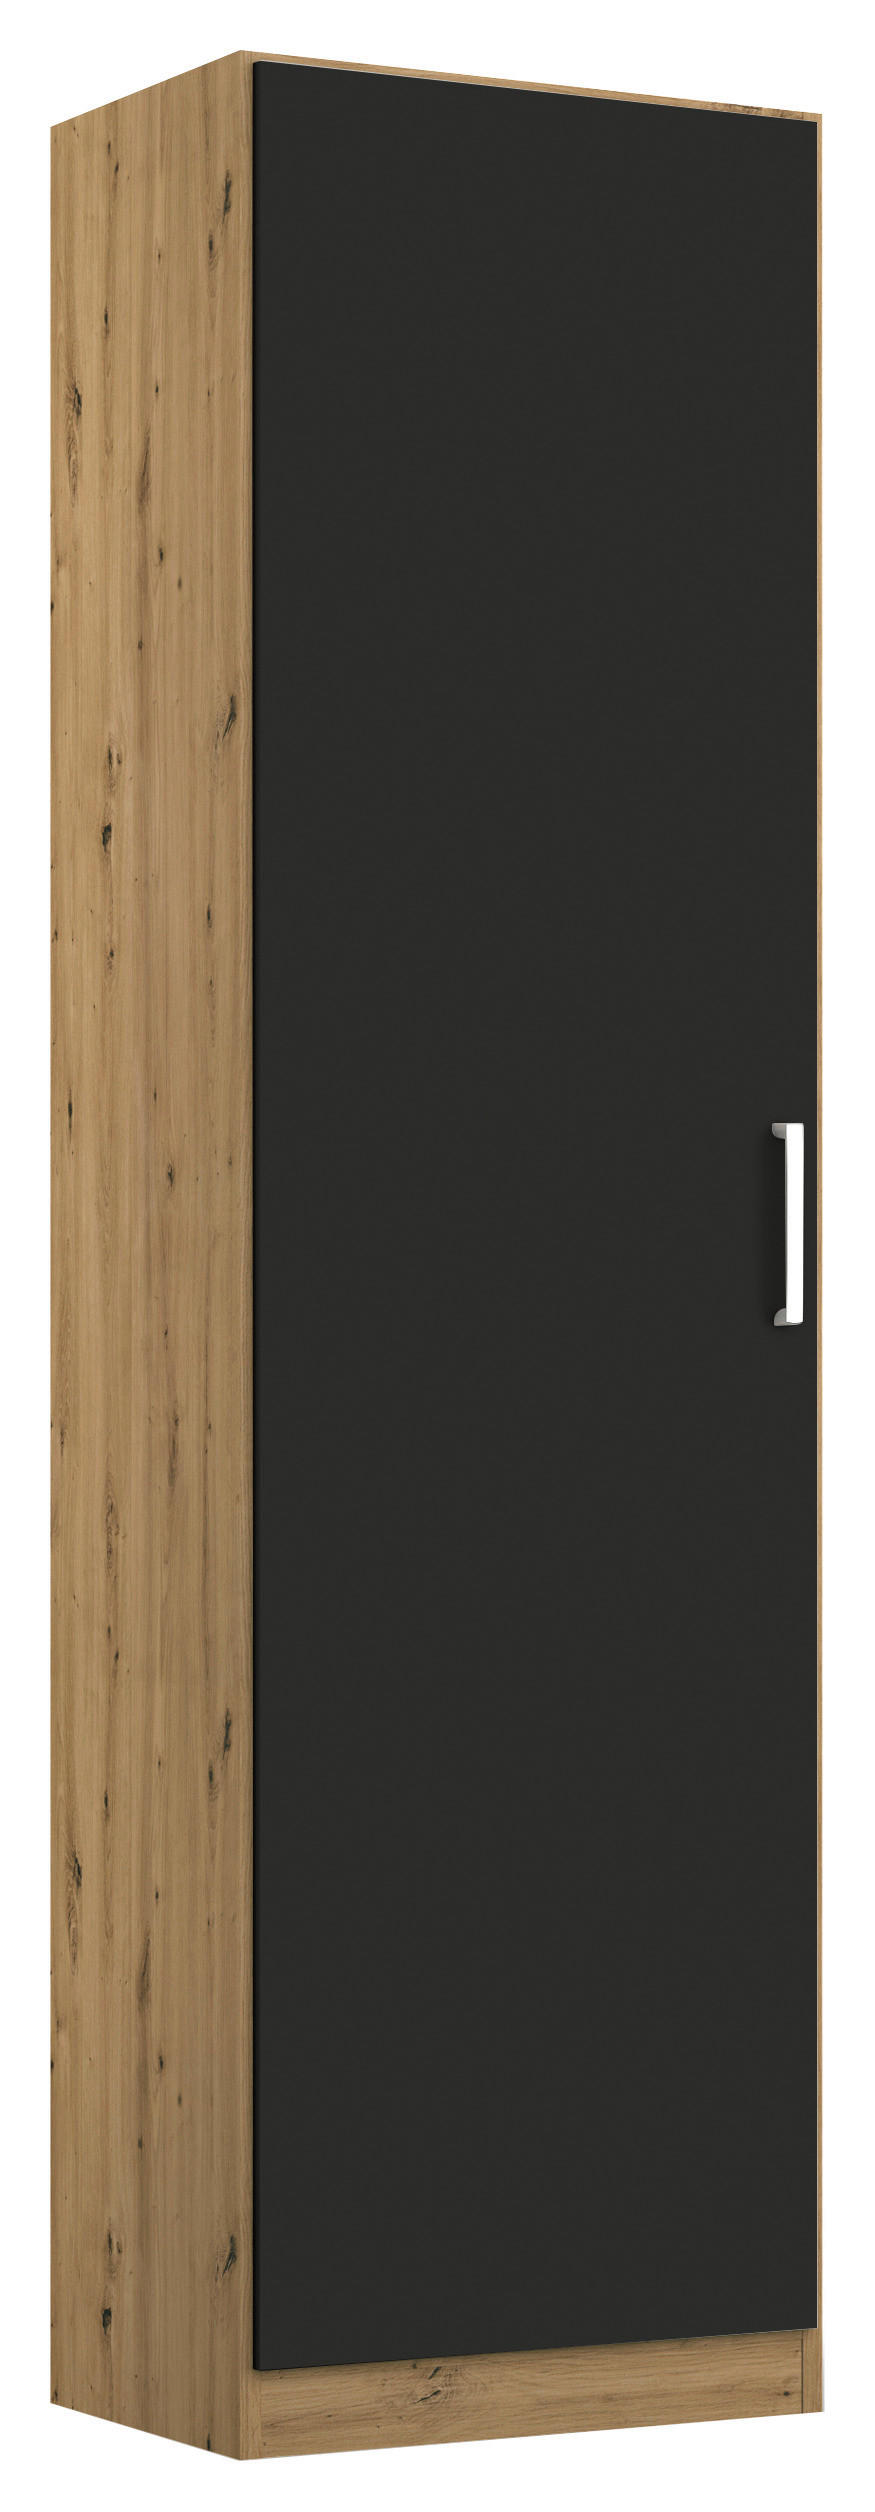 DREHTÜRENSCHRANK  in Grau, Eiche Artisan  - Chromfarben/Eiche Artisan, MODERN, Holzwerkstoff/Kunststoff (47/197/54cm) - Rauch Möbel